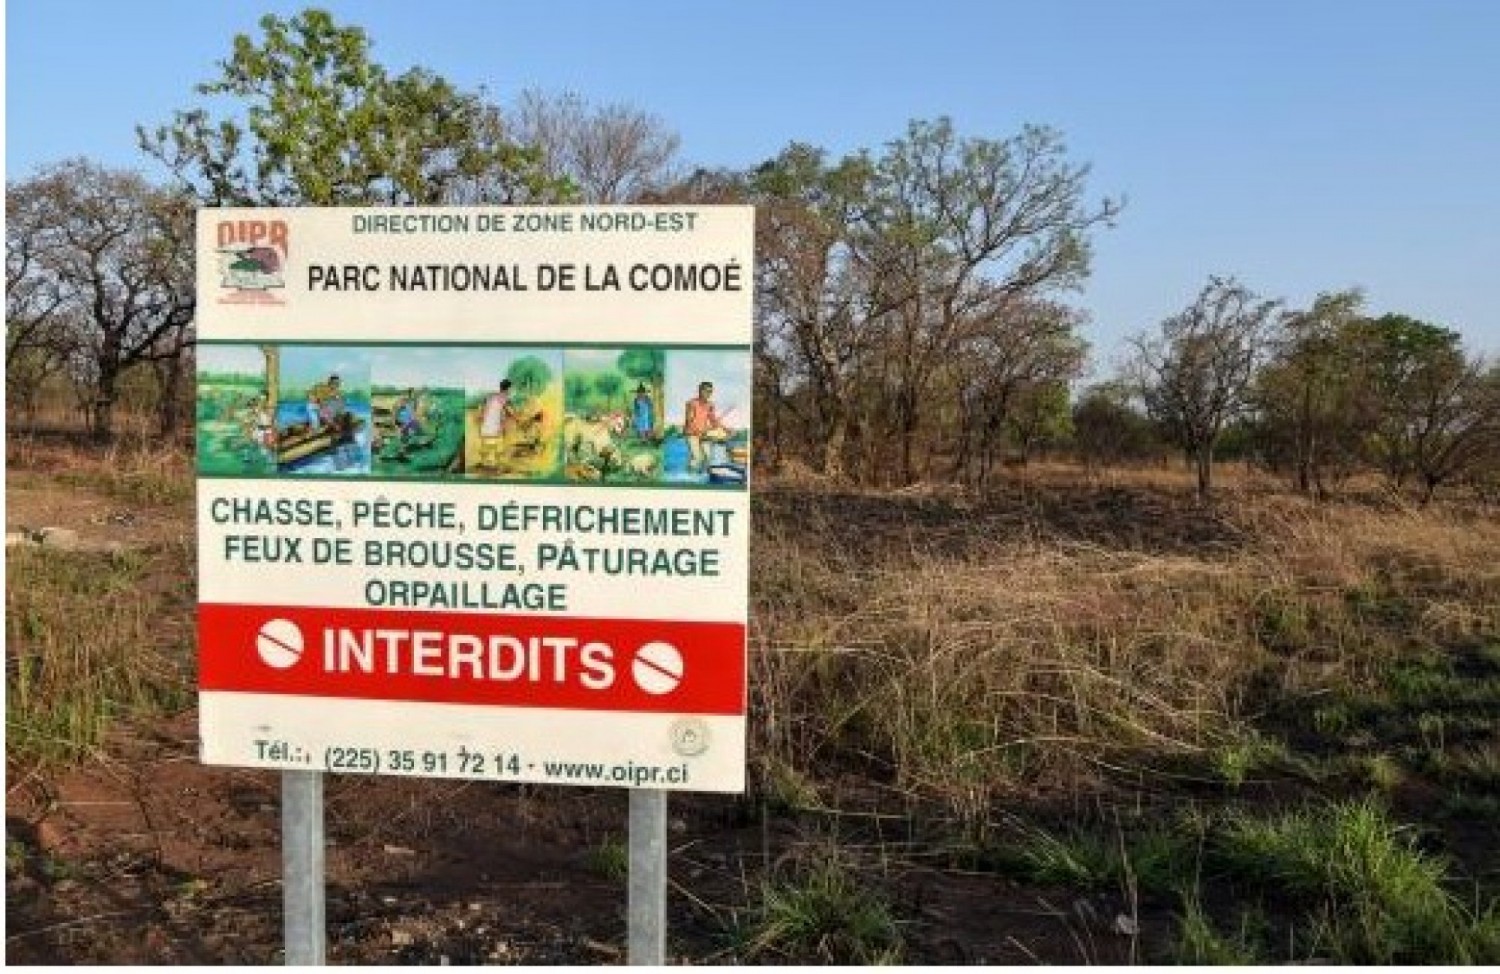 Côte d'Ivoire : Une amende de 50 millions de FCFA infligé à un orpailleur clandestin pour activités illégales au parc de la Comoé